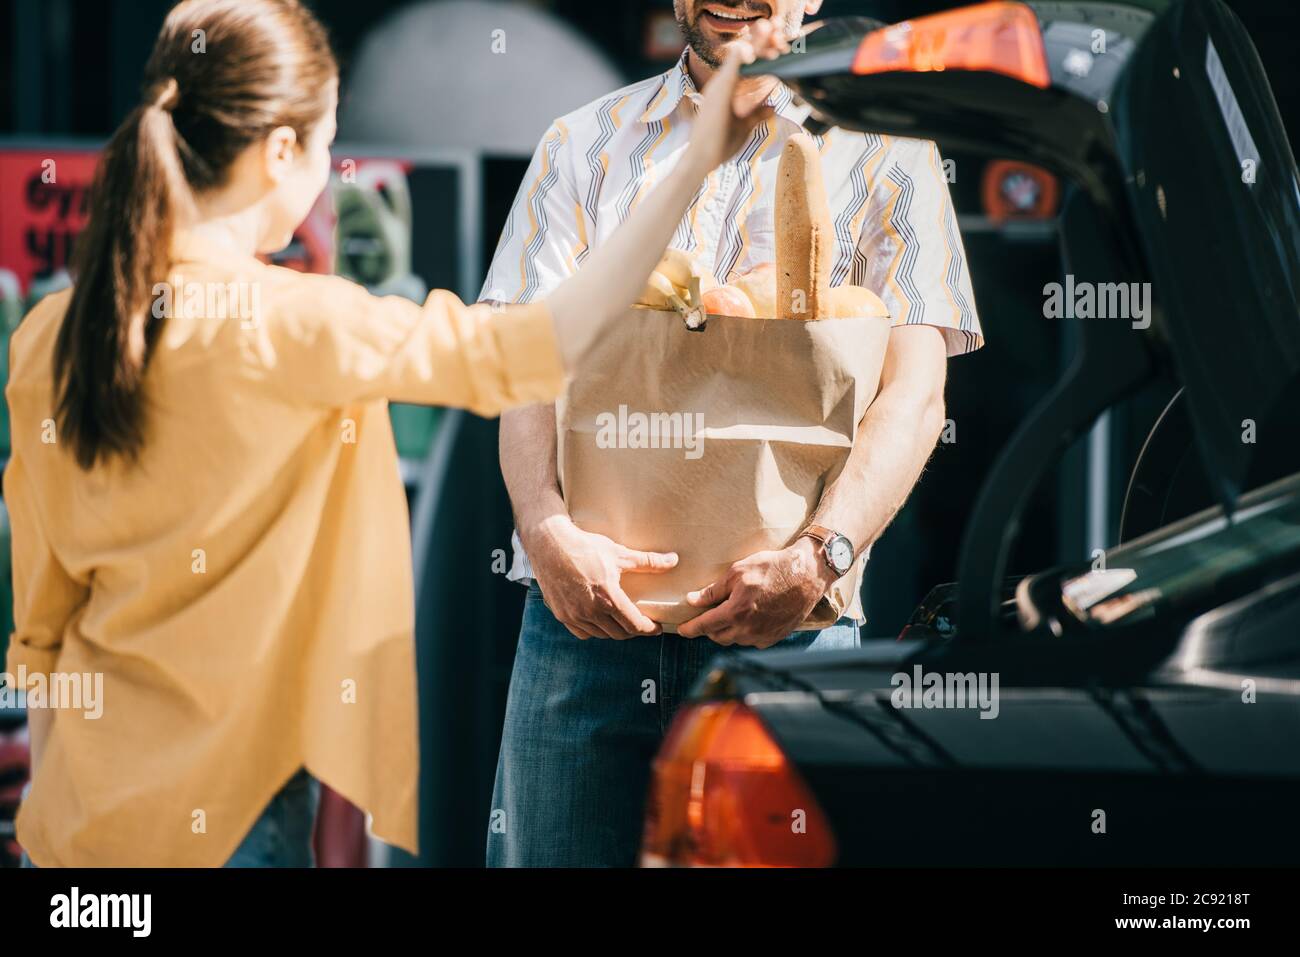 Selektiver Fokus auf lächelnden Mann, der Einkaufstasche mit Essen in der Nähe von Frau und Kofferraum auf der städtischen Straße hält Stockfoto